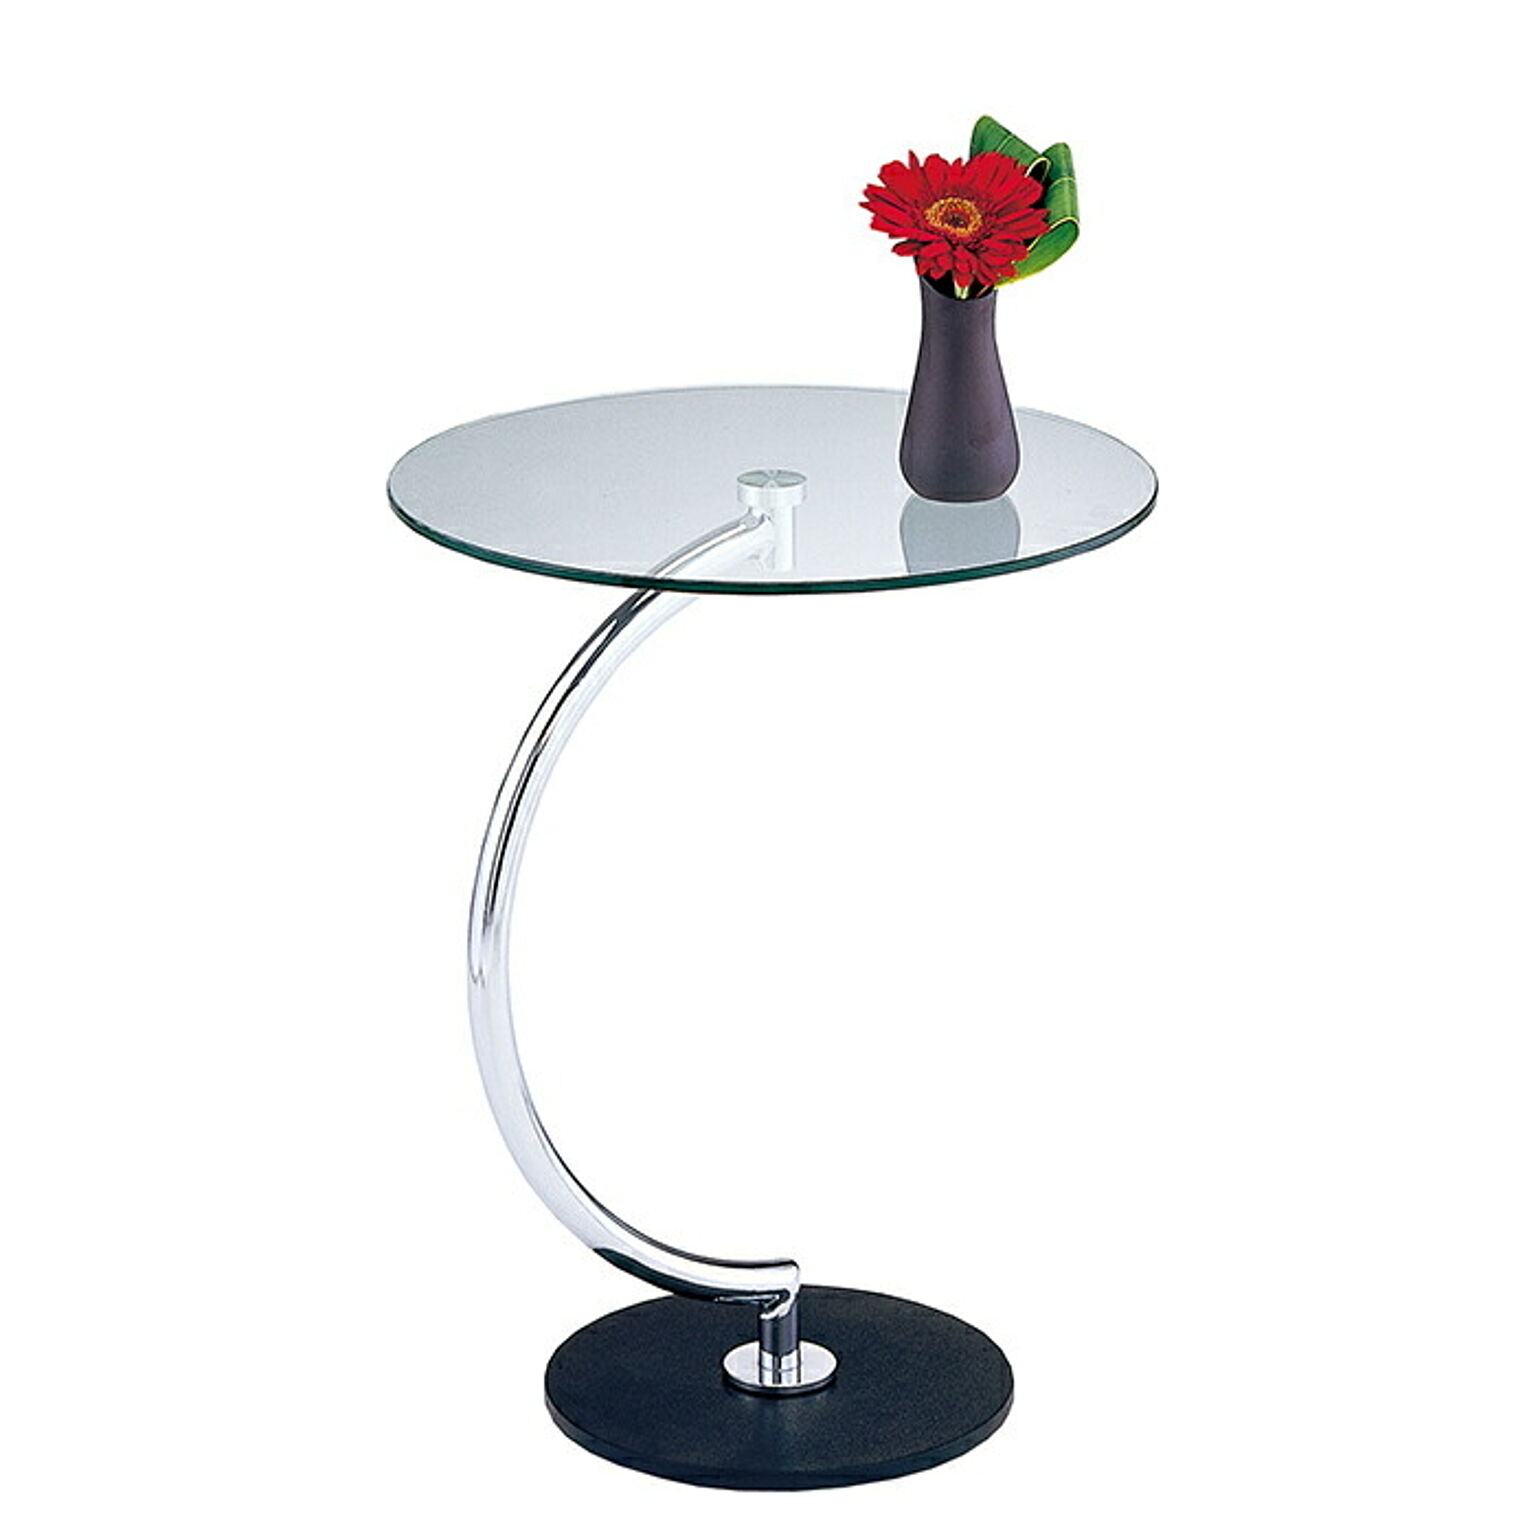 あずま工芸 ブラスサイドテーブル 組立式 幅460x奥行460x高さ555mm